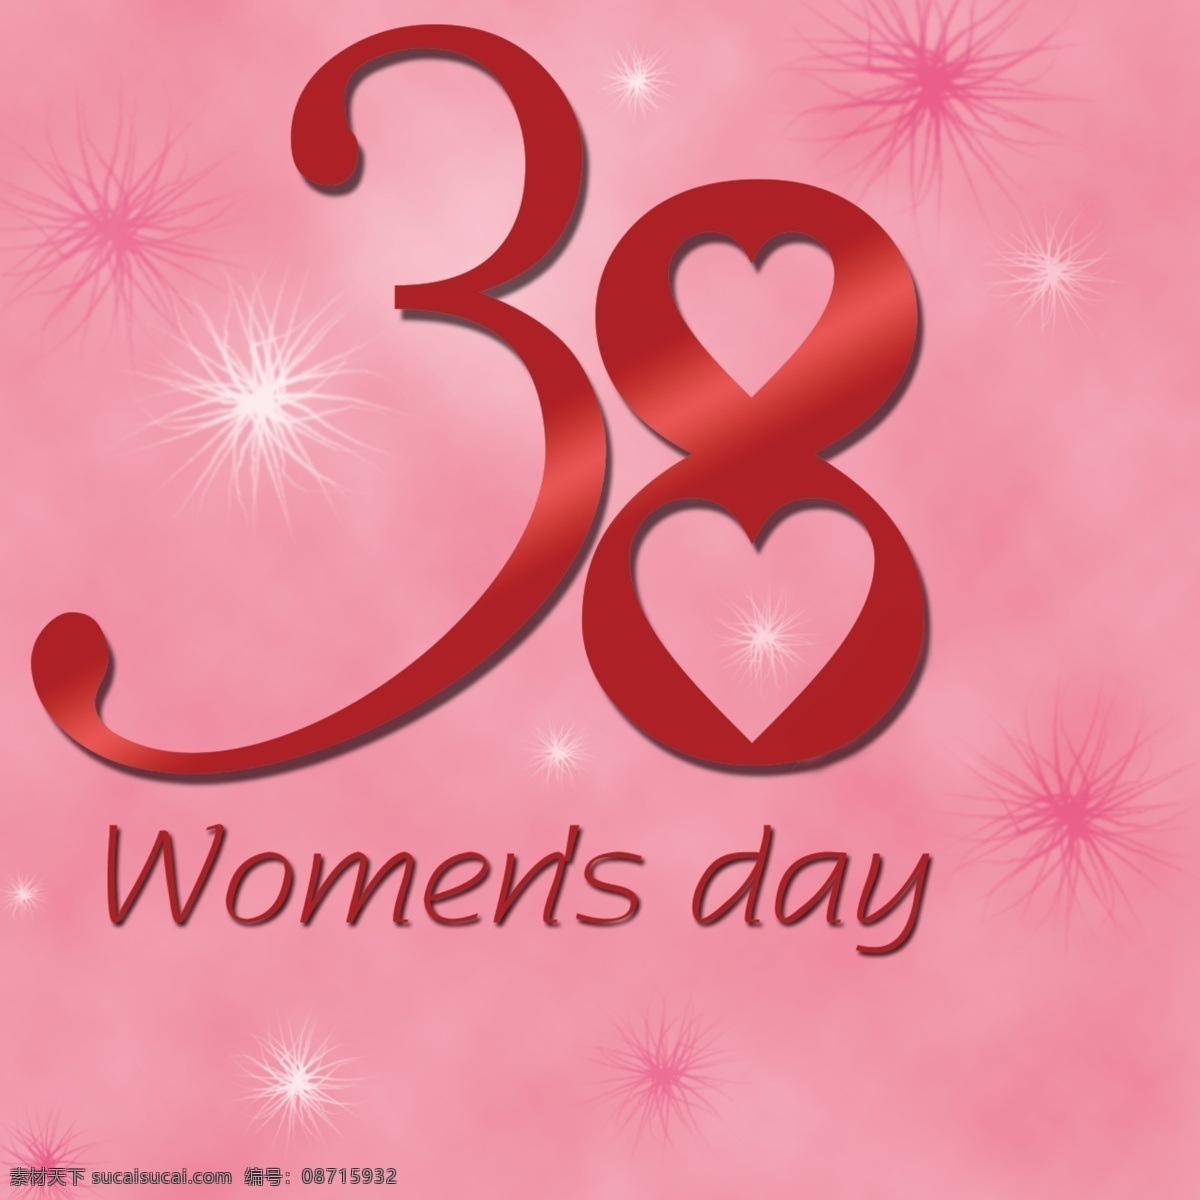 三八妇女节 素材图片 38妇女节 38 妇女节 分层 粉红色背景 源文件 节日素材